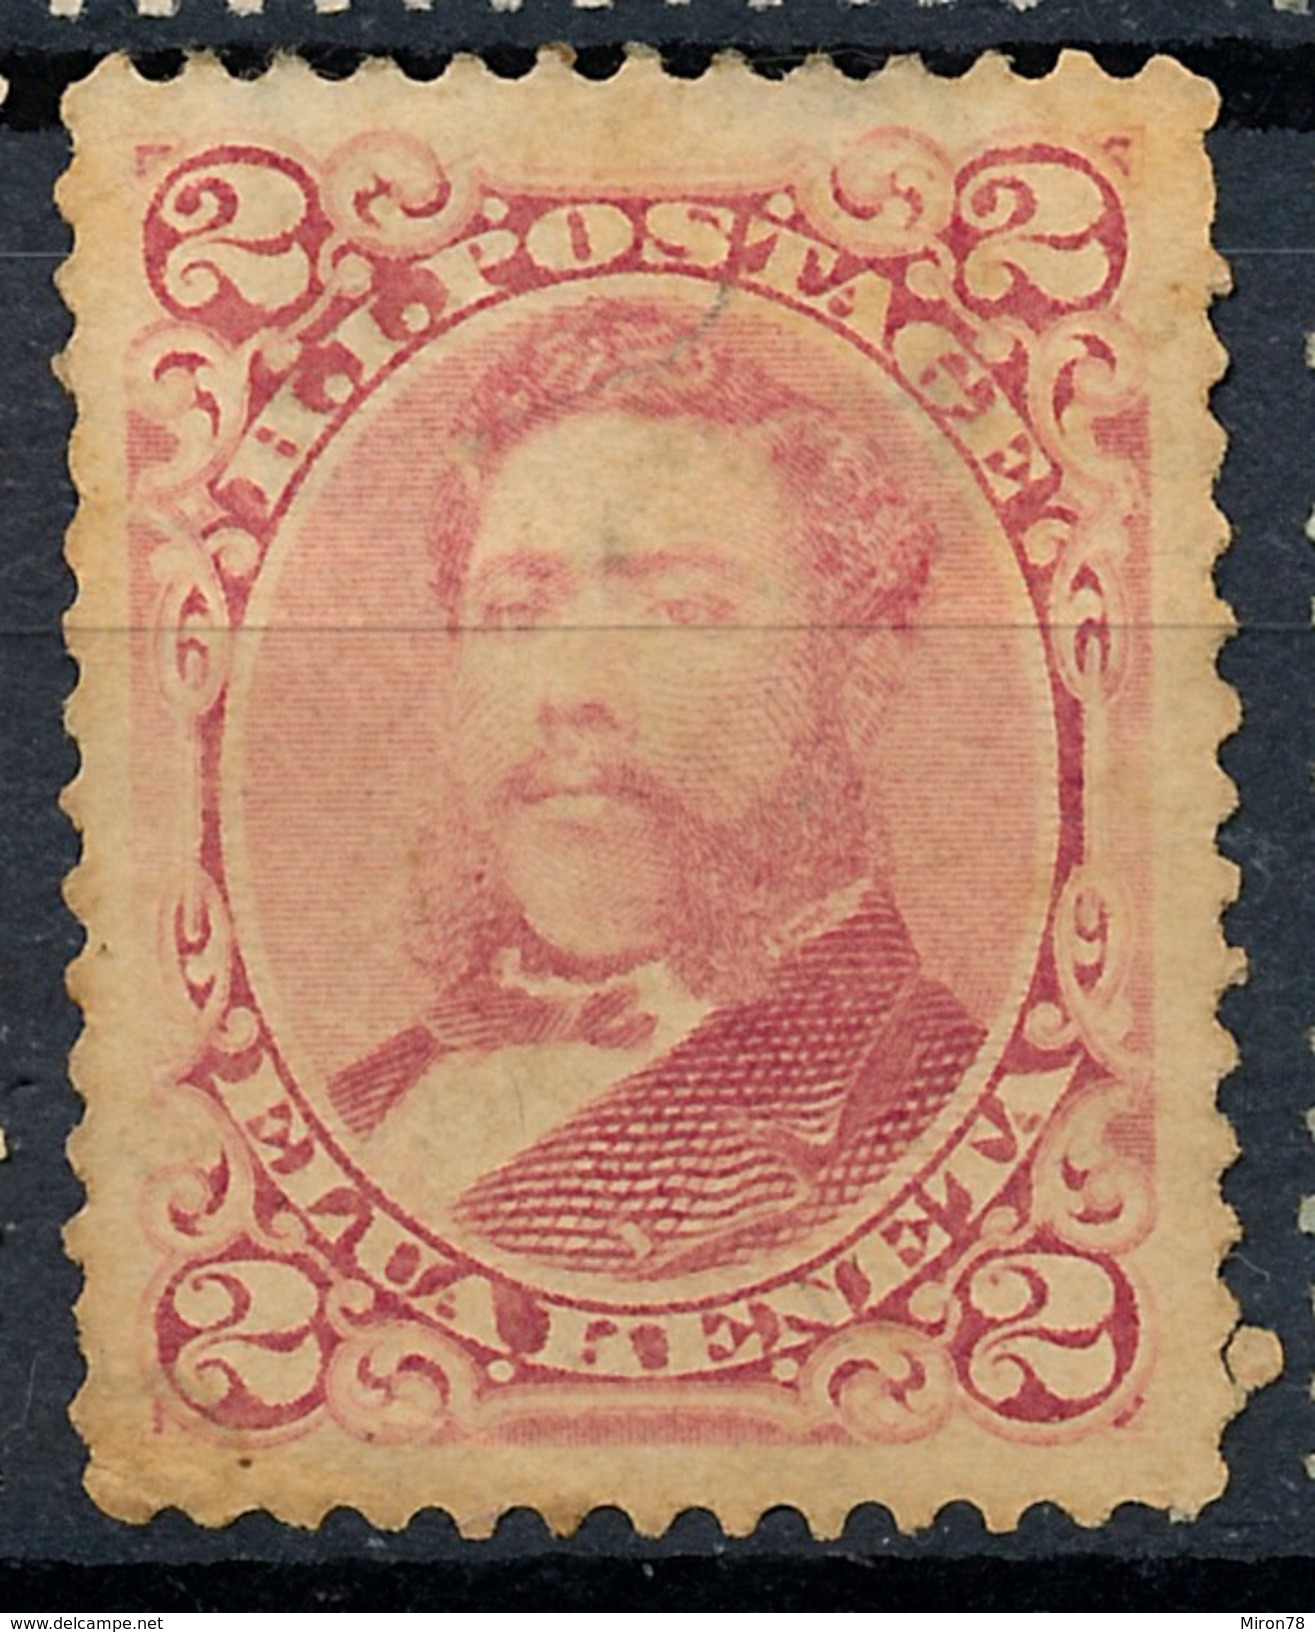 Stamp Hawaii 1883 Mint 2c Lot#14 - Hawaï